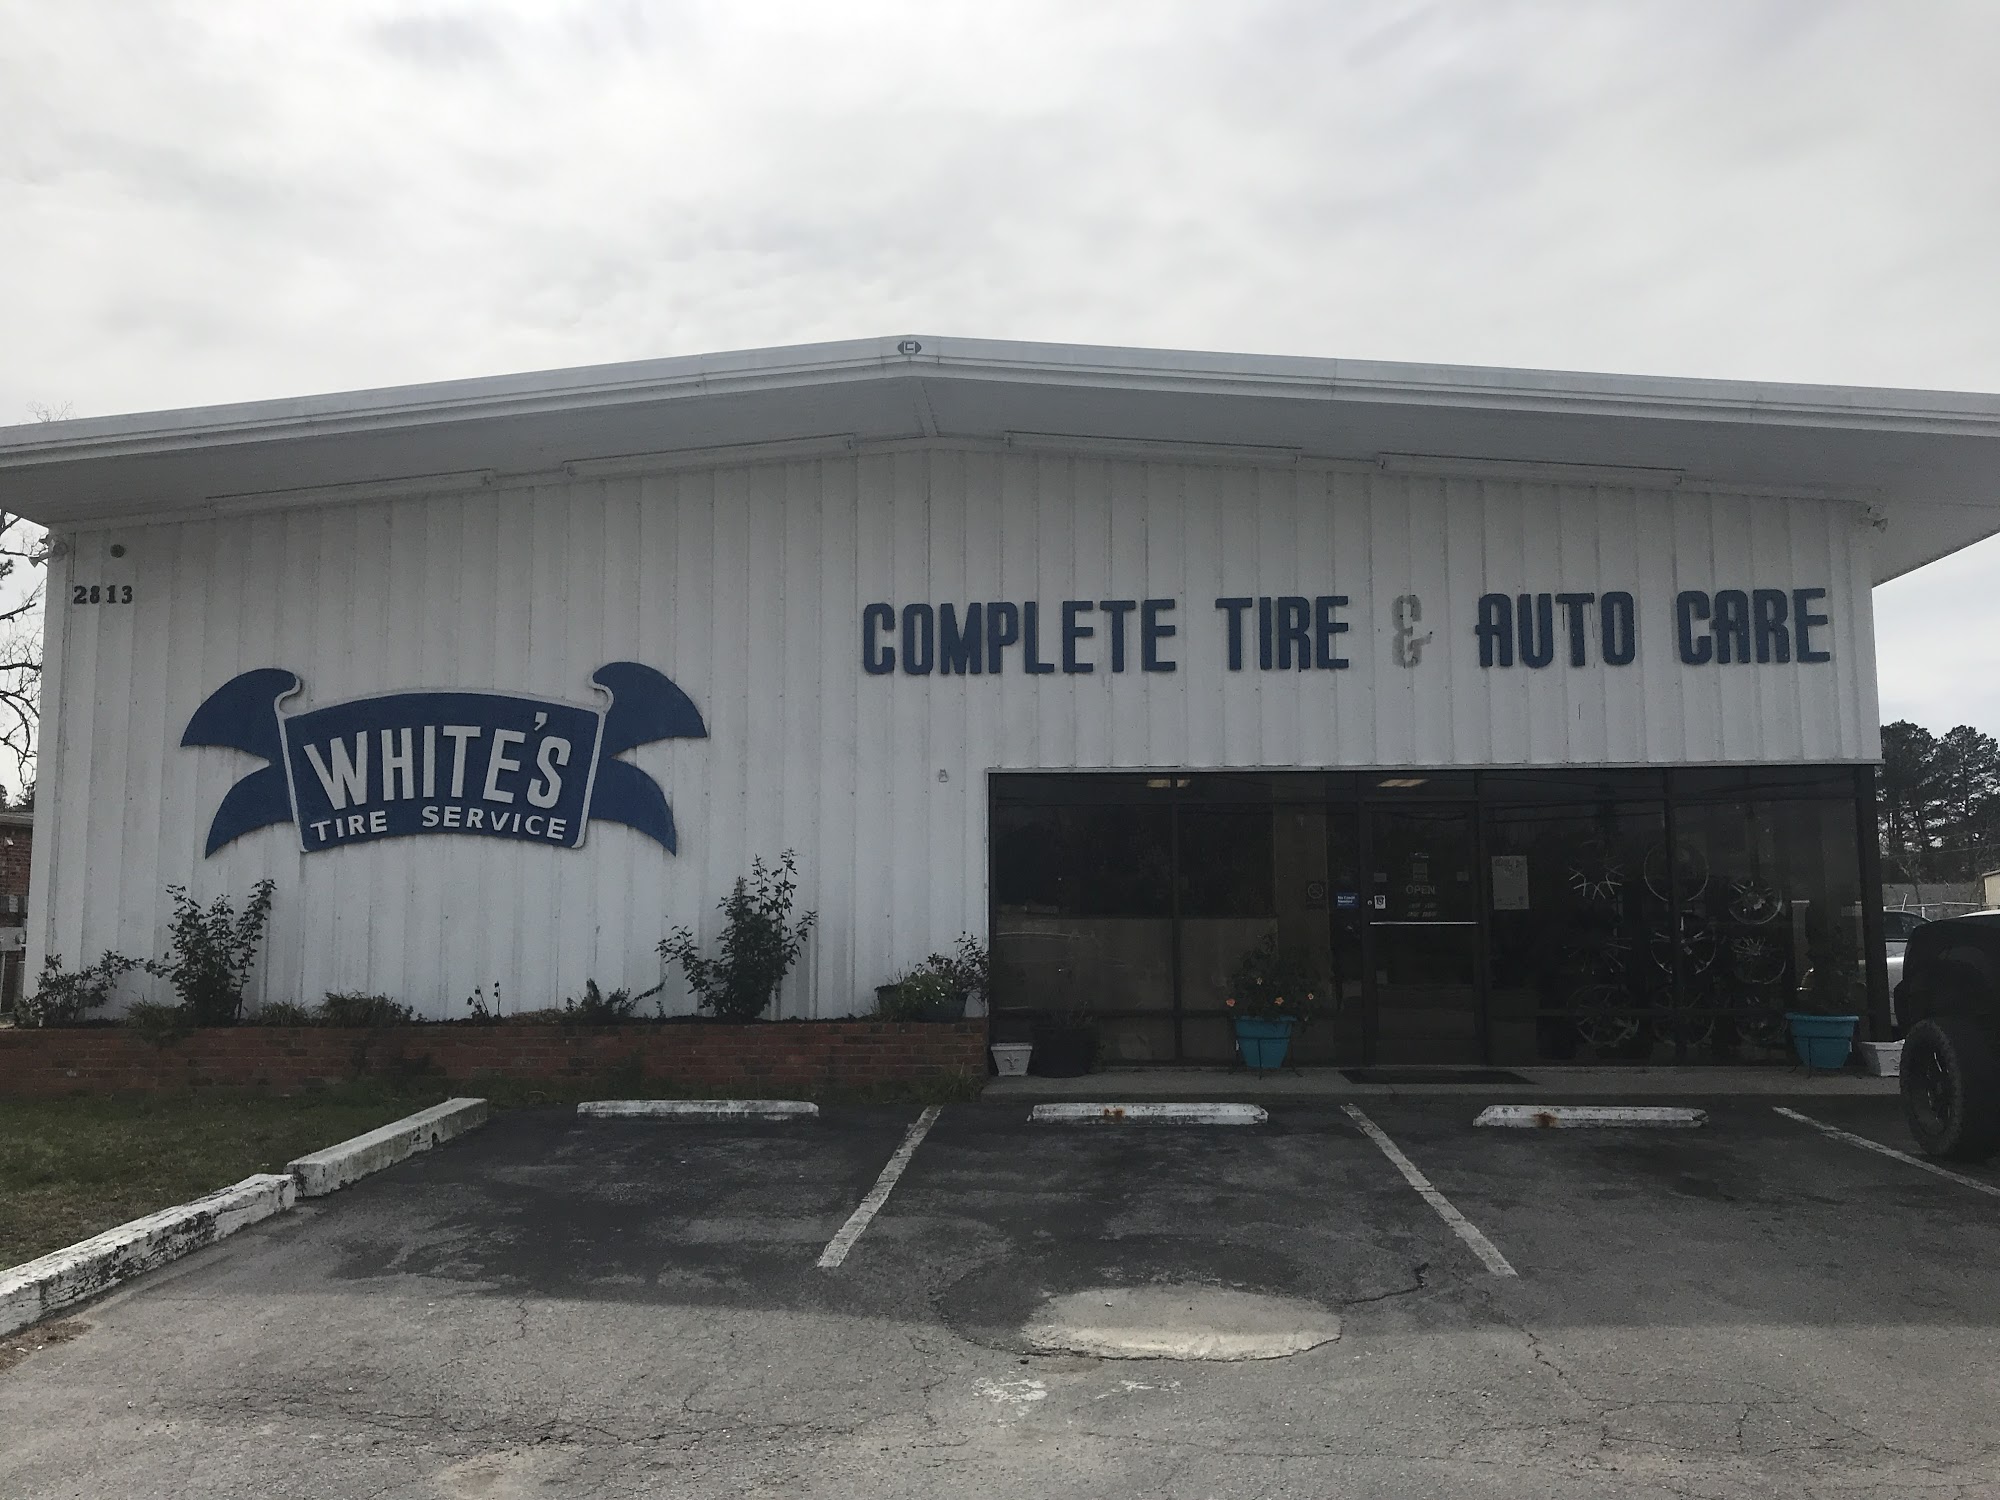 White's Tire Service